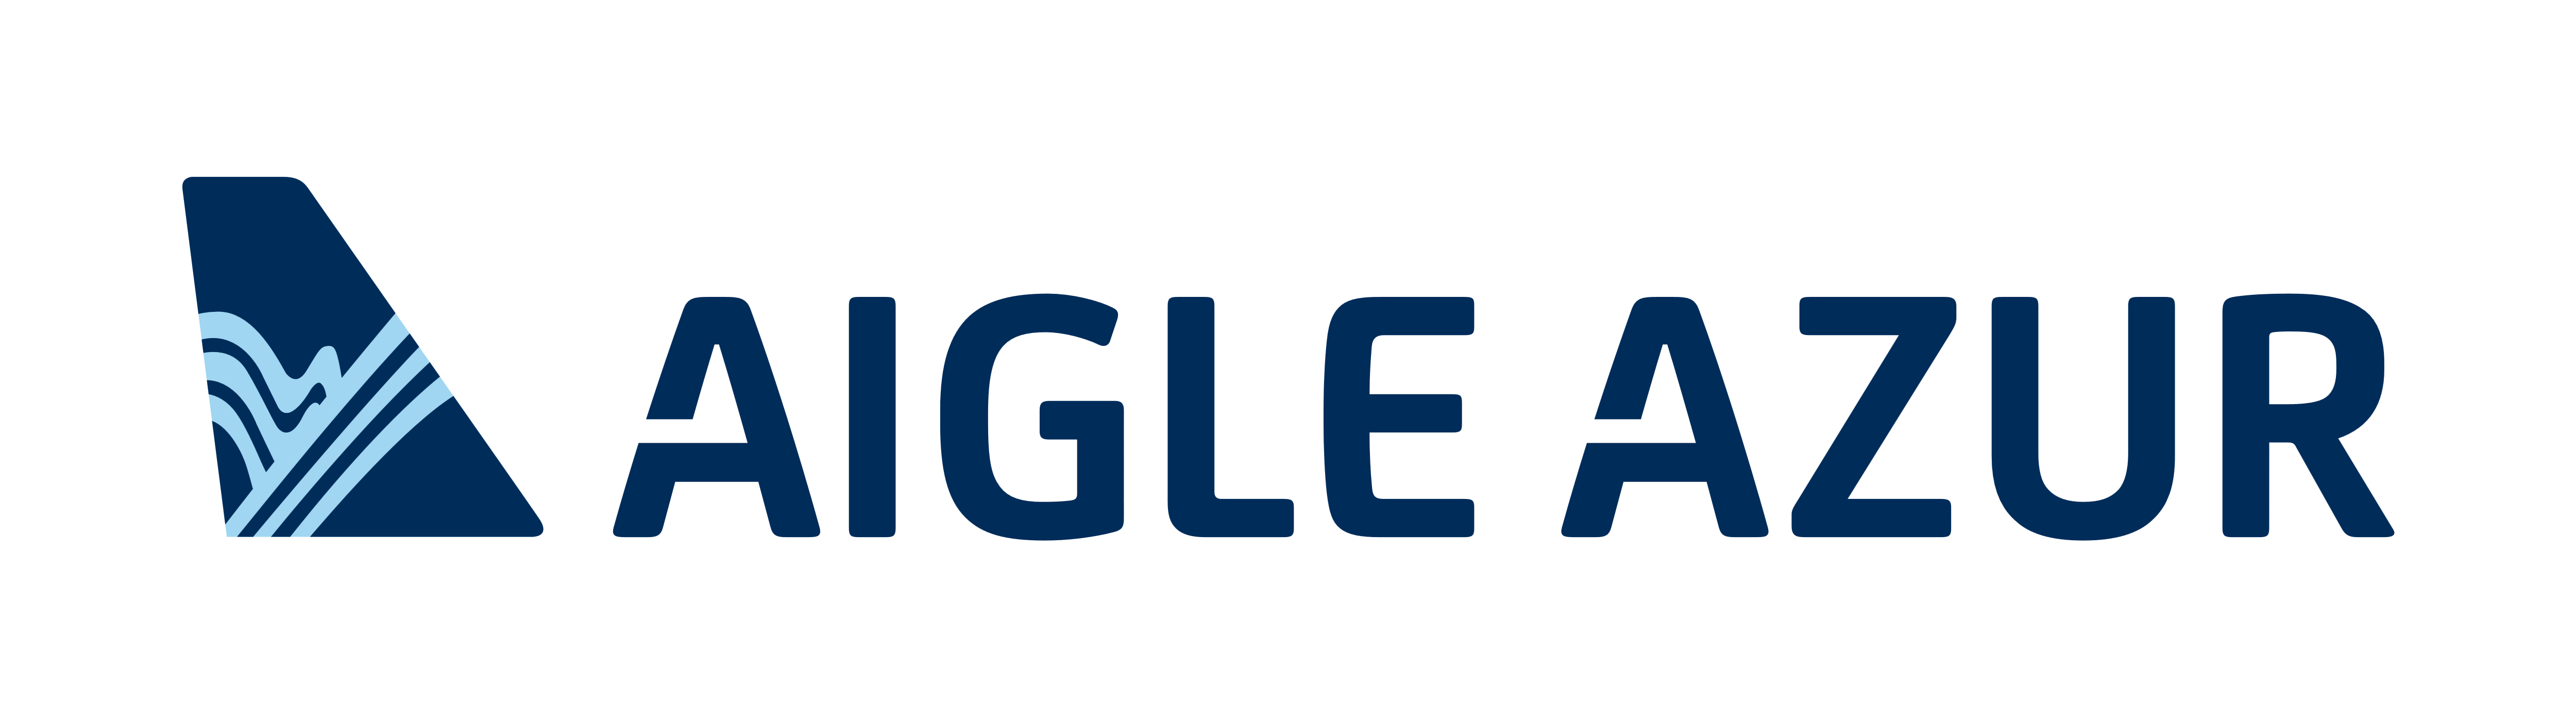 Aigle Azur – Logos Download